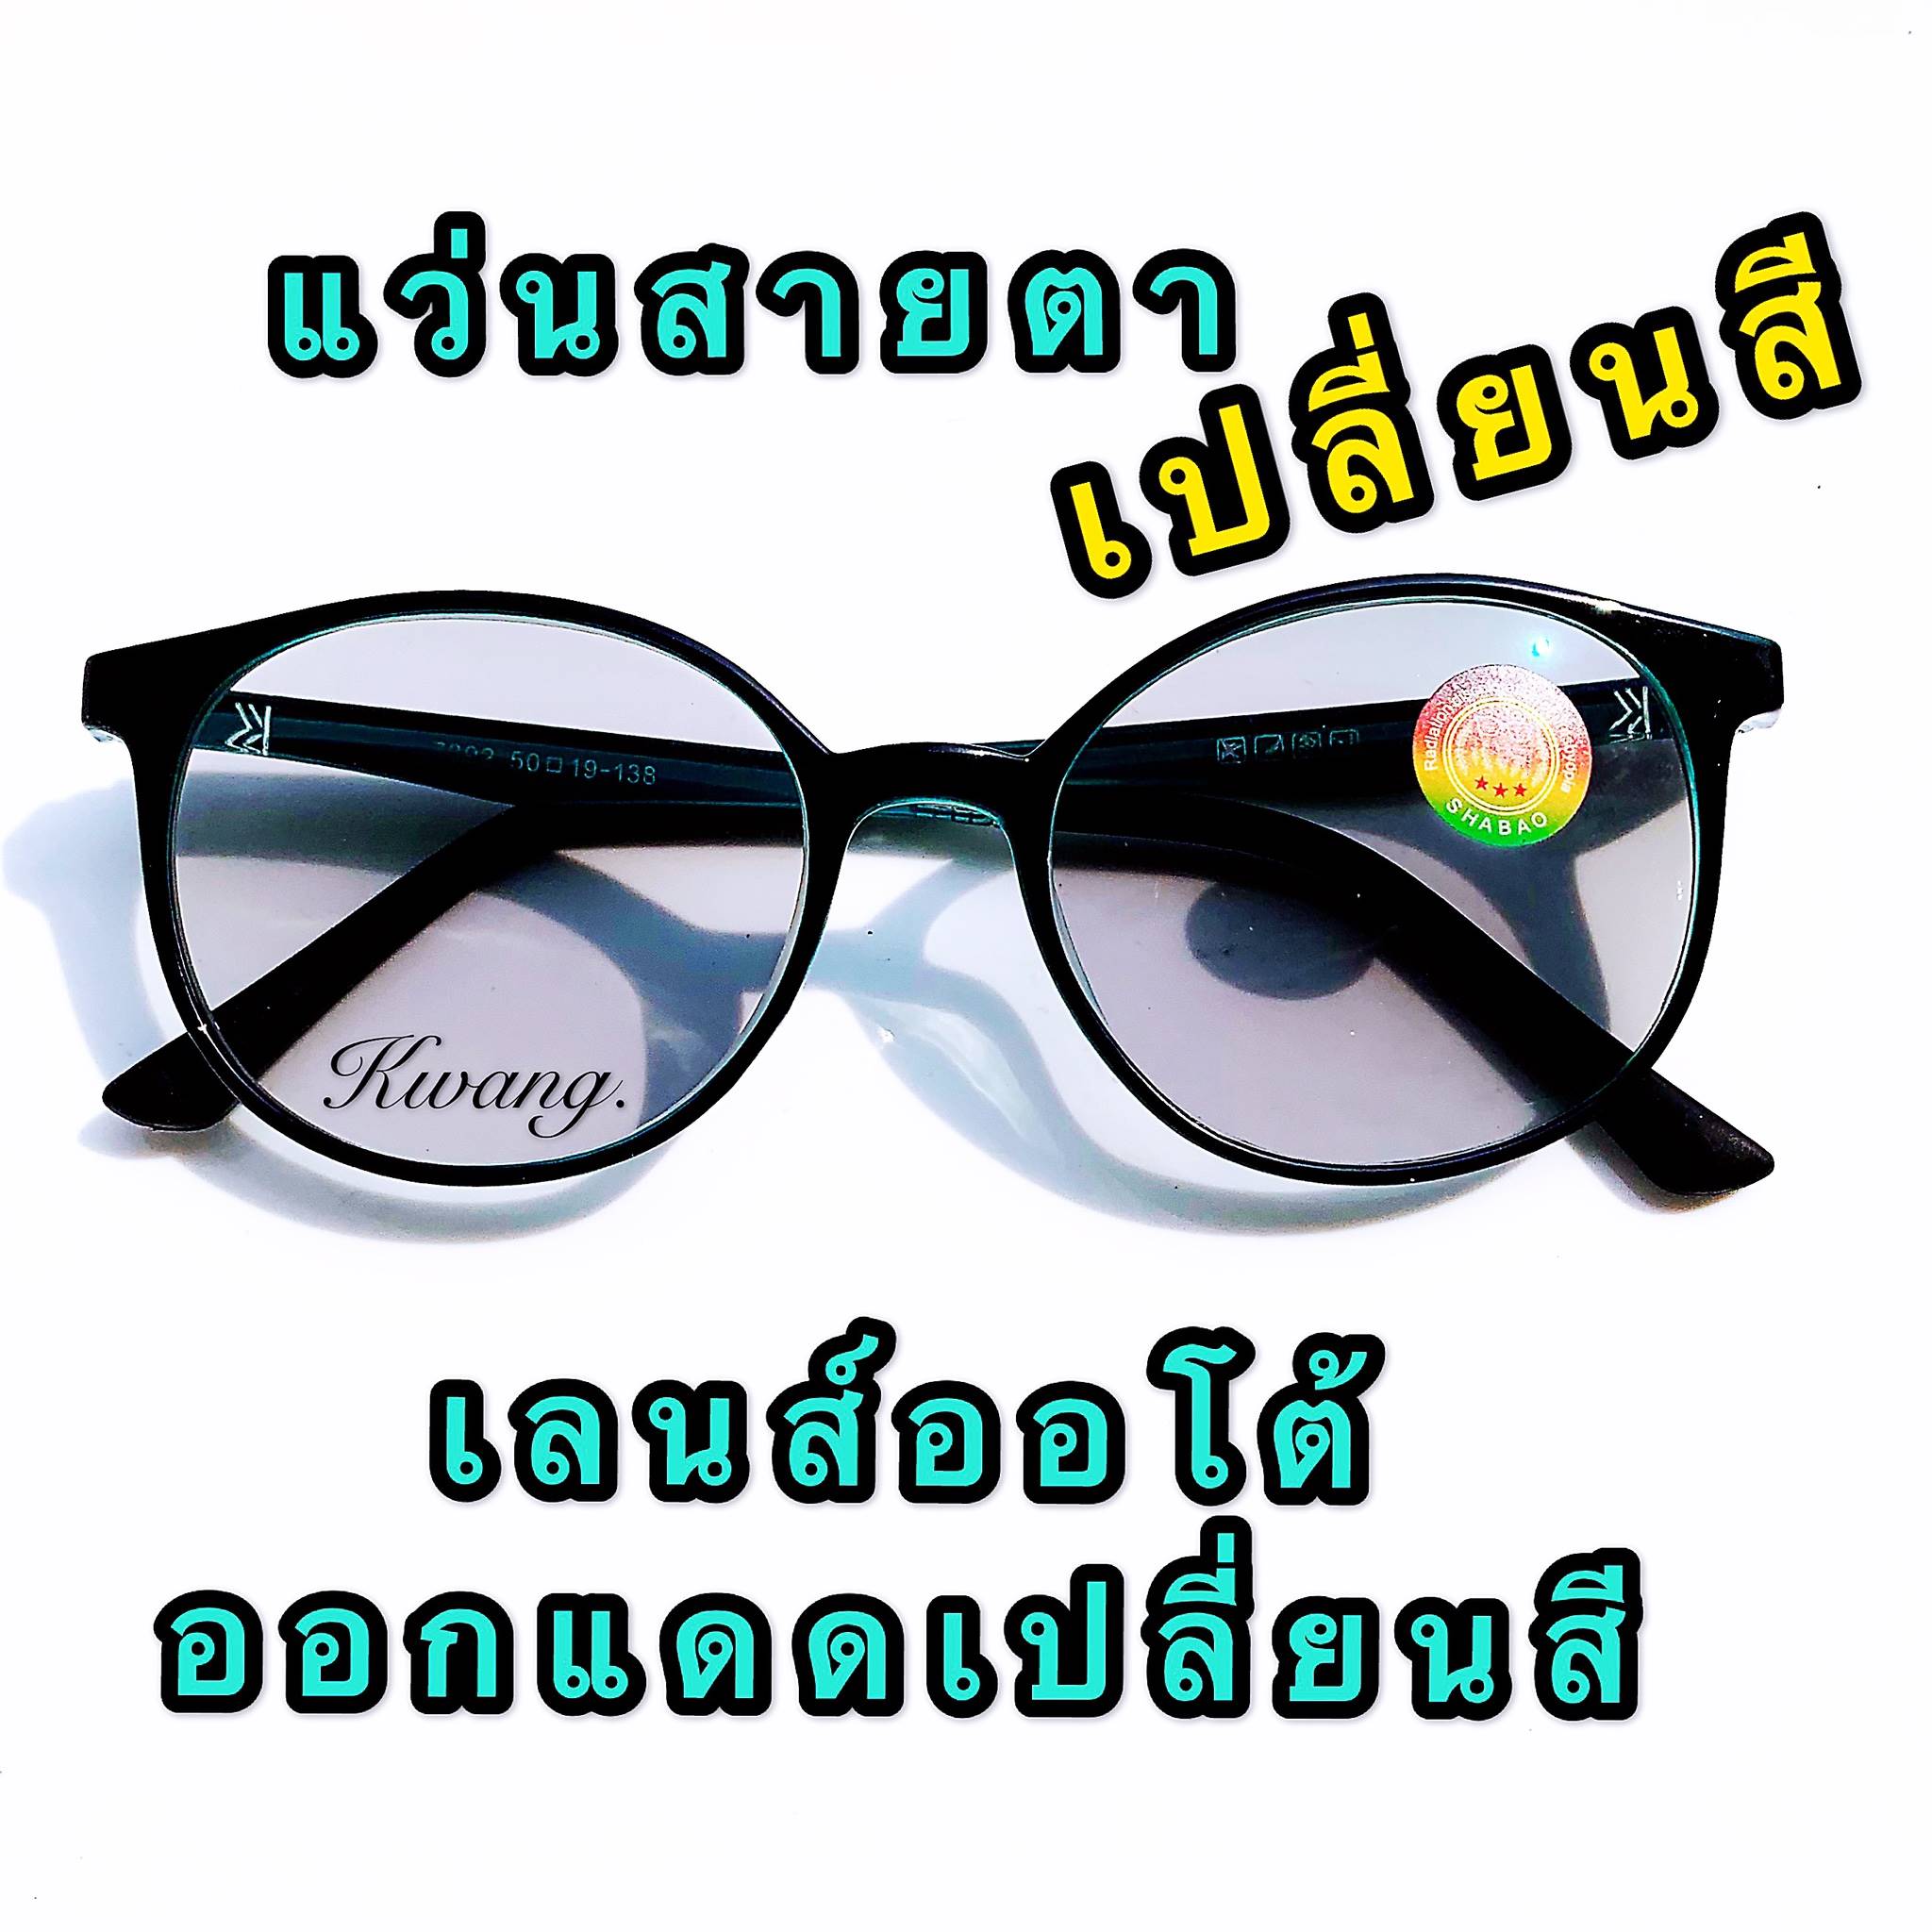 แว่นตาออโต้เลนส์ แว่นสายตายาว แว่นสายตาสั้น ออโต้เลนส์ ปรับสีเข้มขึ้นโดยอัตโนมัติ สีดำเขียว ทรงรี  น้ำหนักเบามาก มีตั้งแต่เลนส์ 0.50-4.00  ( แถมฟรีซองใส่แว่นและผ้าเช็ดเลนส์อย่างดี ) แว่นสายตา เก็บเงินปลายทางได้ งานสวยไม่เป็นรองใครแน่นอน